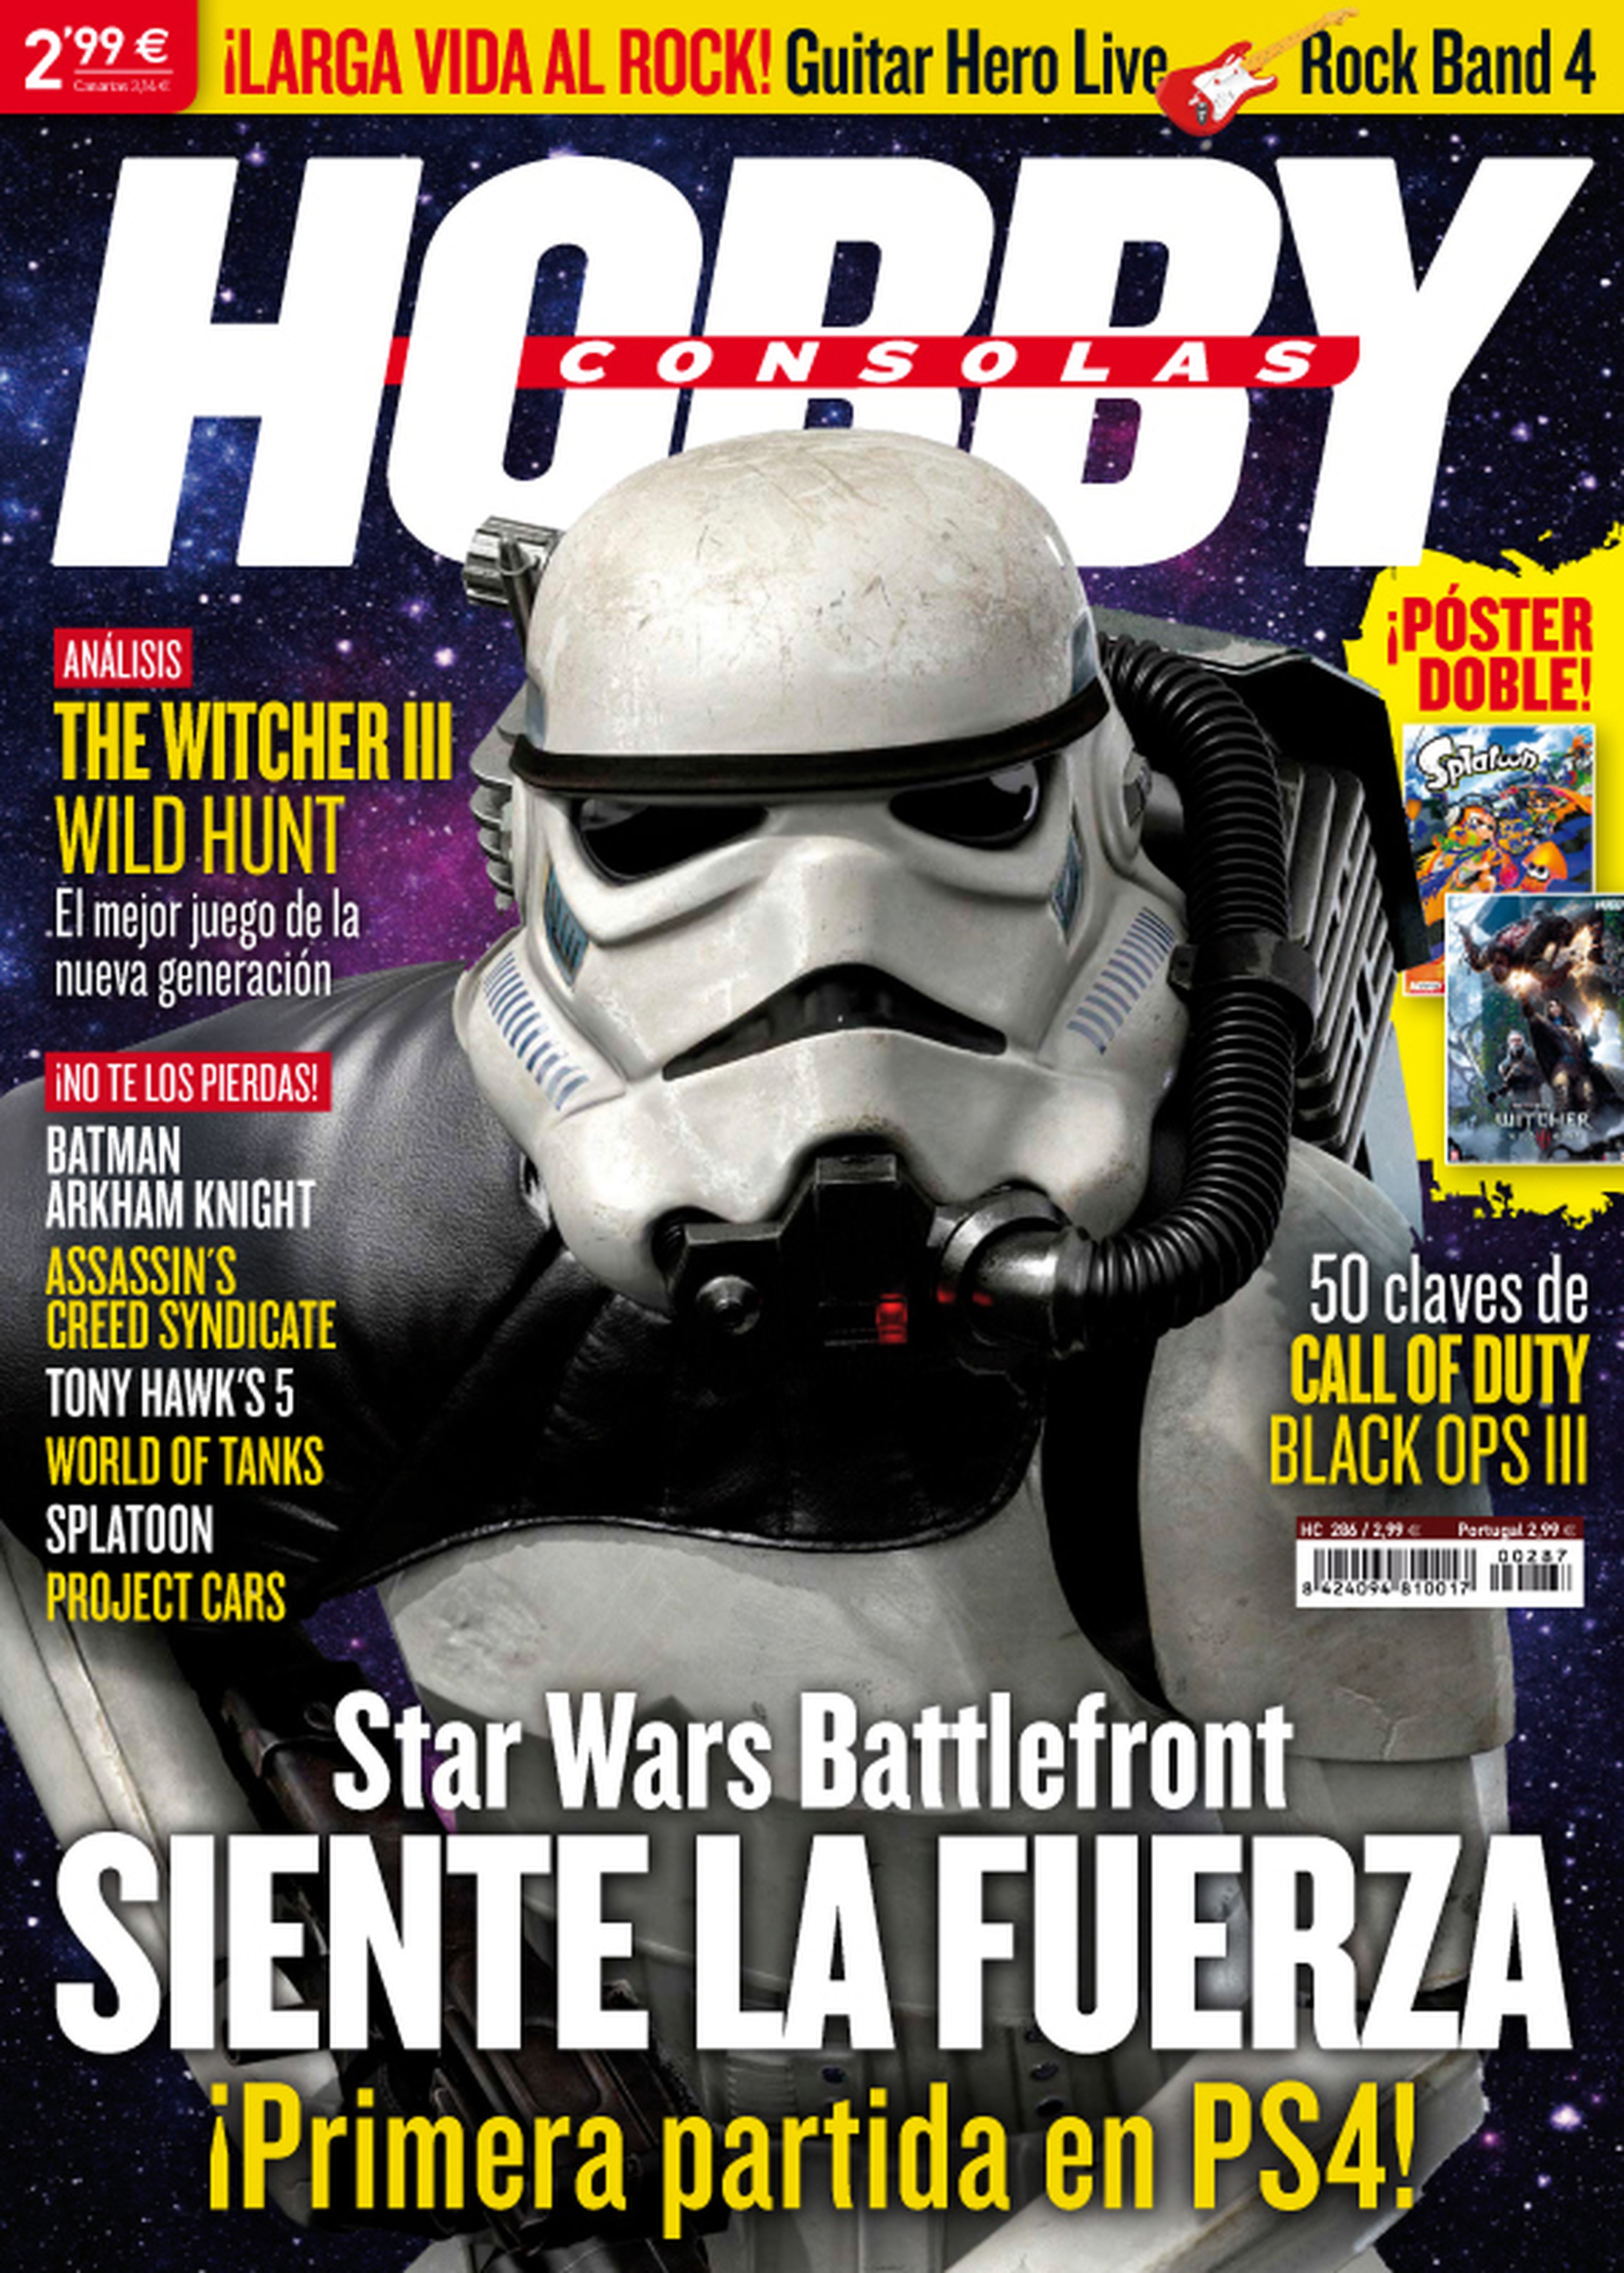 ¡Star Wars Battlefront es la portada del próximo número de Hobby Consolas!